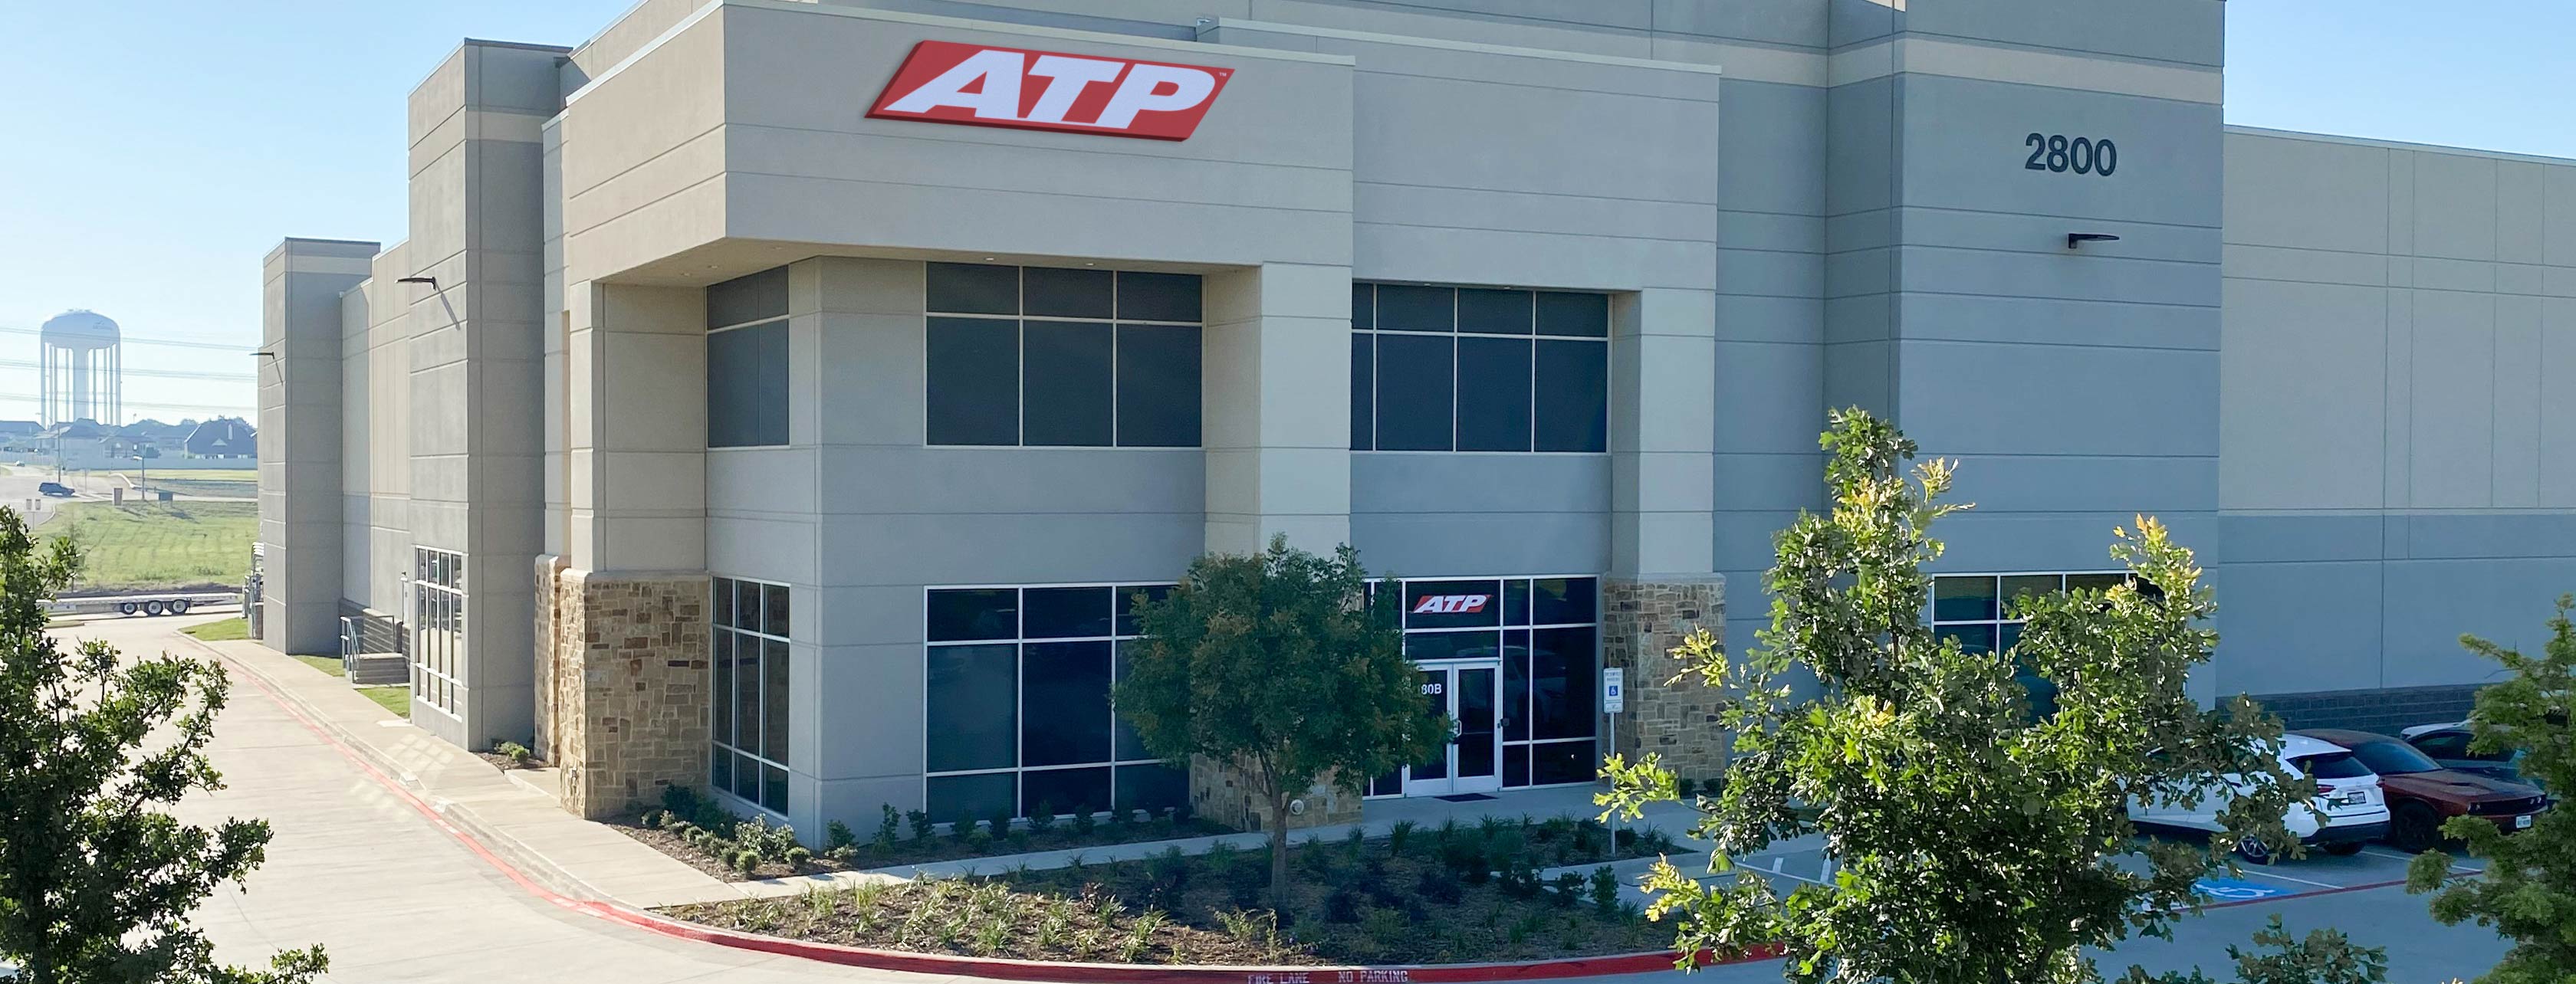 ATP Flight School - ATP JETS in Dallas Texas